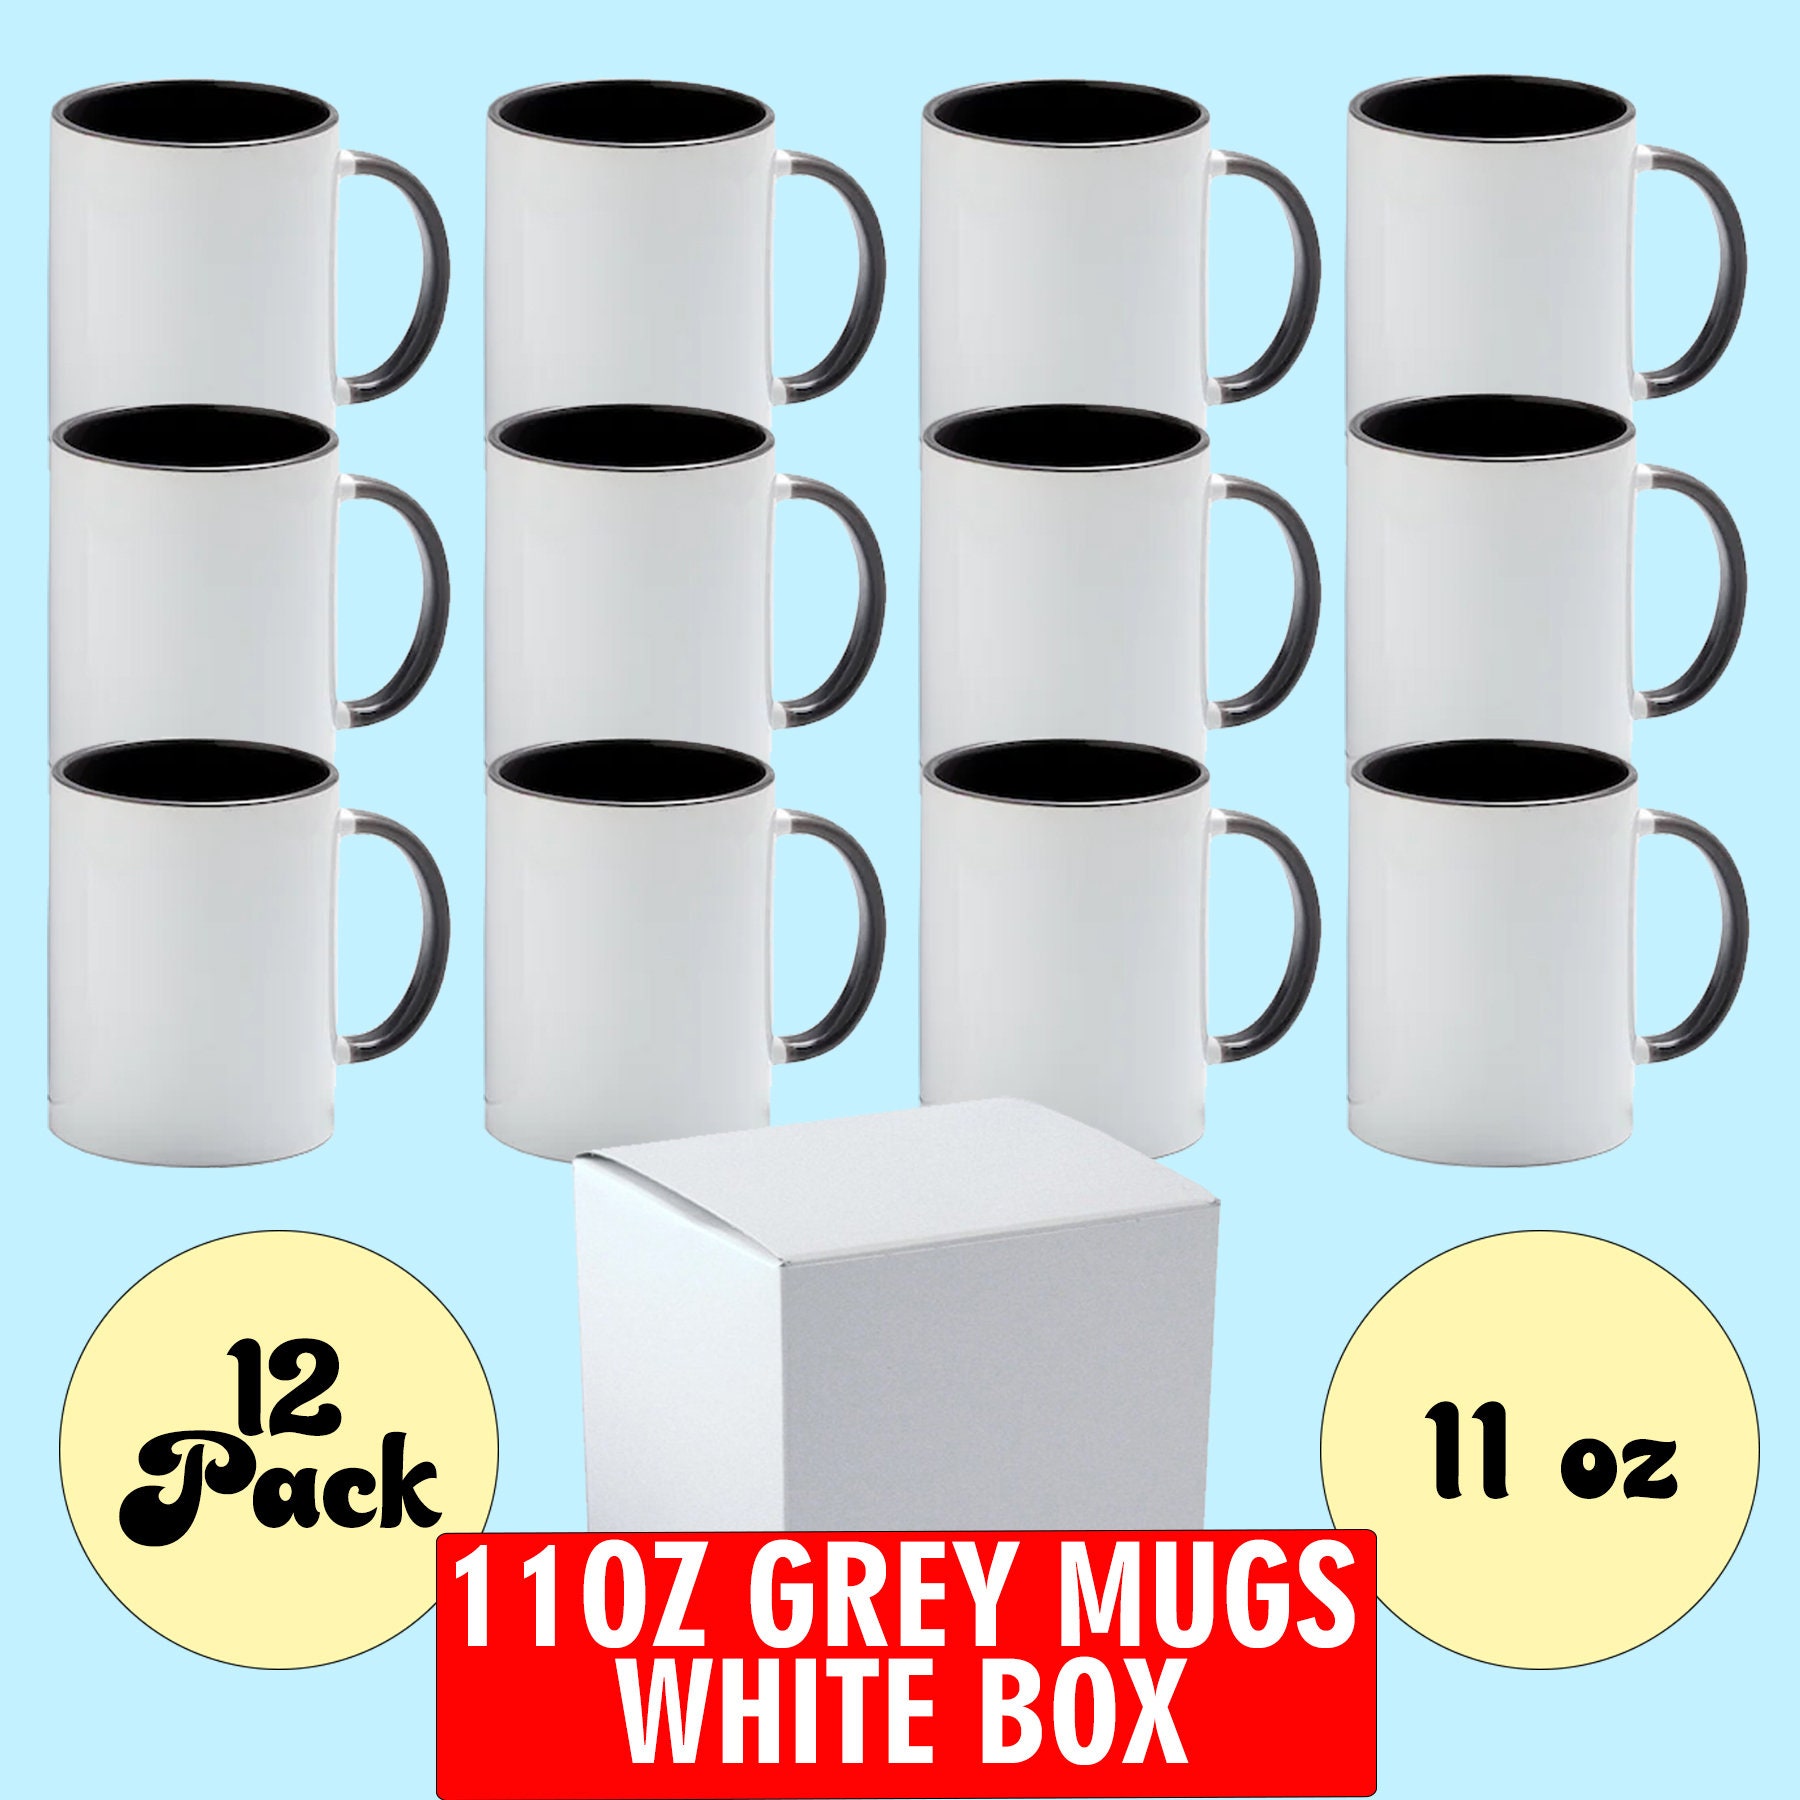 Sublimation Mugs - 12 Oz Sublimation Mugs Blank Sublimation Cups Set of 12  White